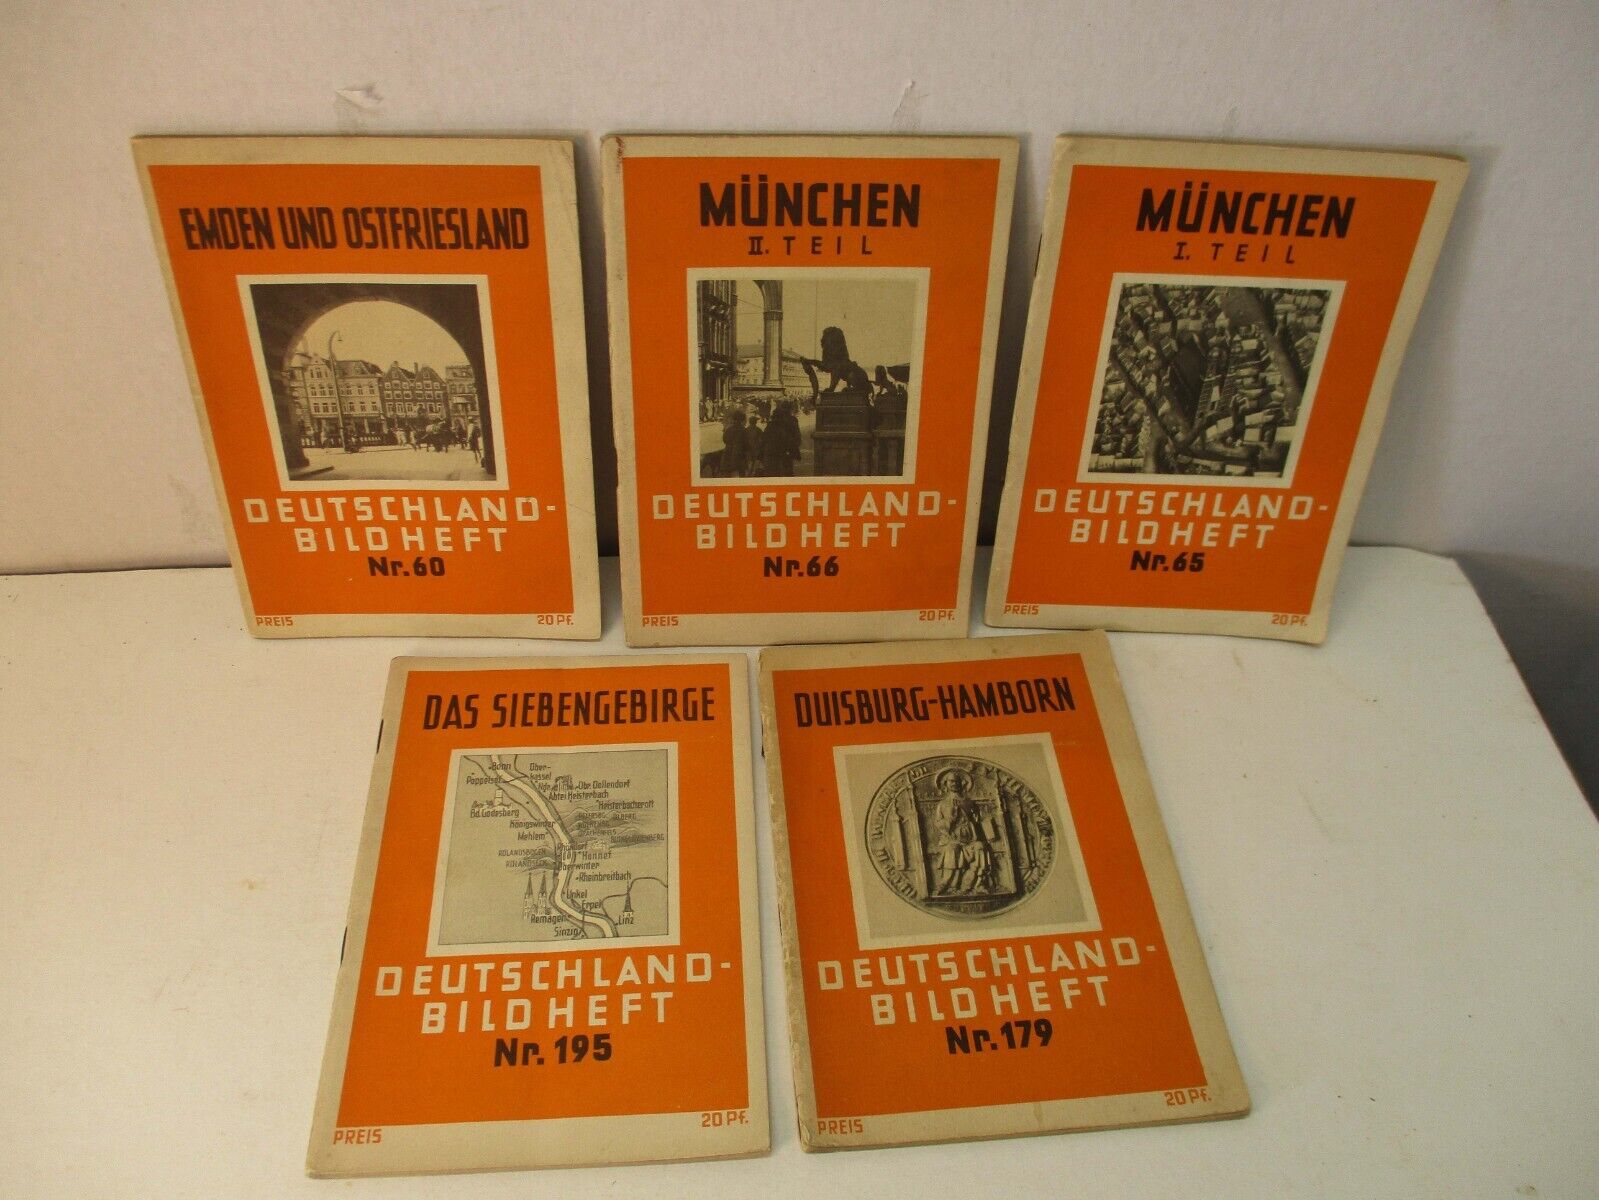 5 German Picture Books Deutschland-bild Heft